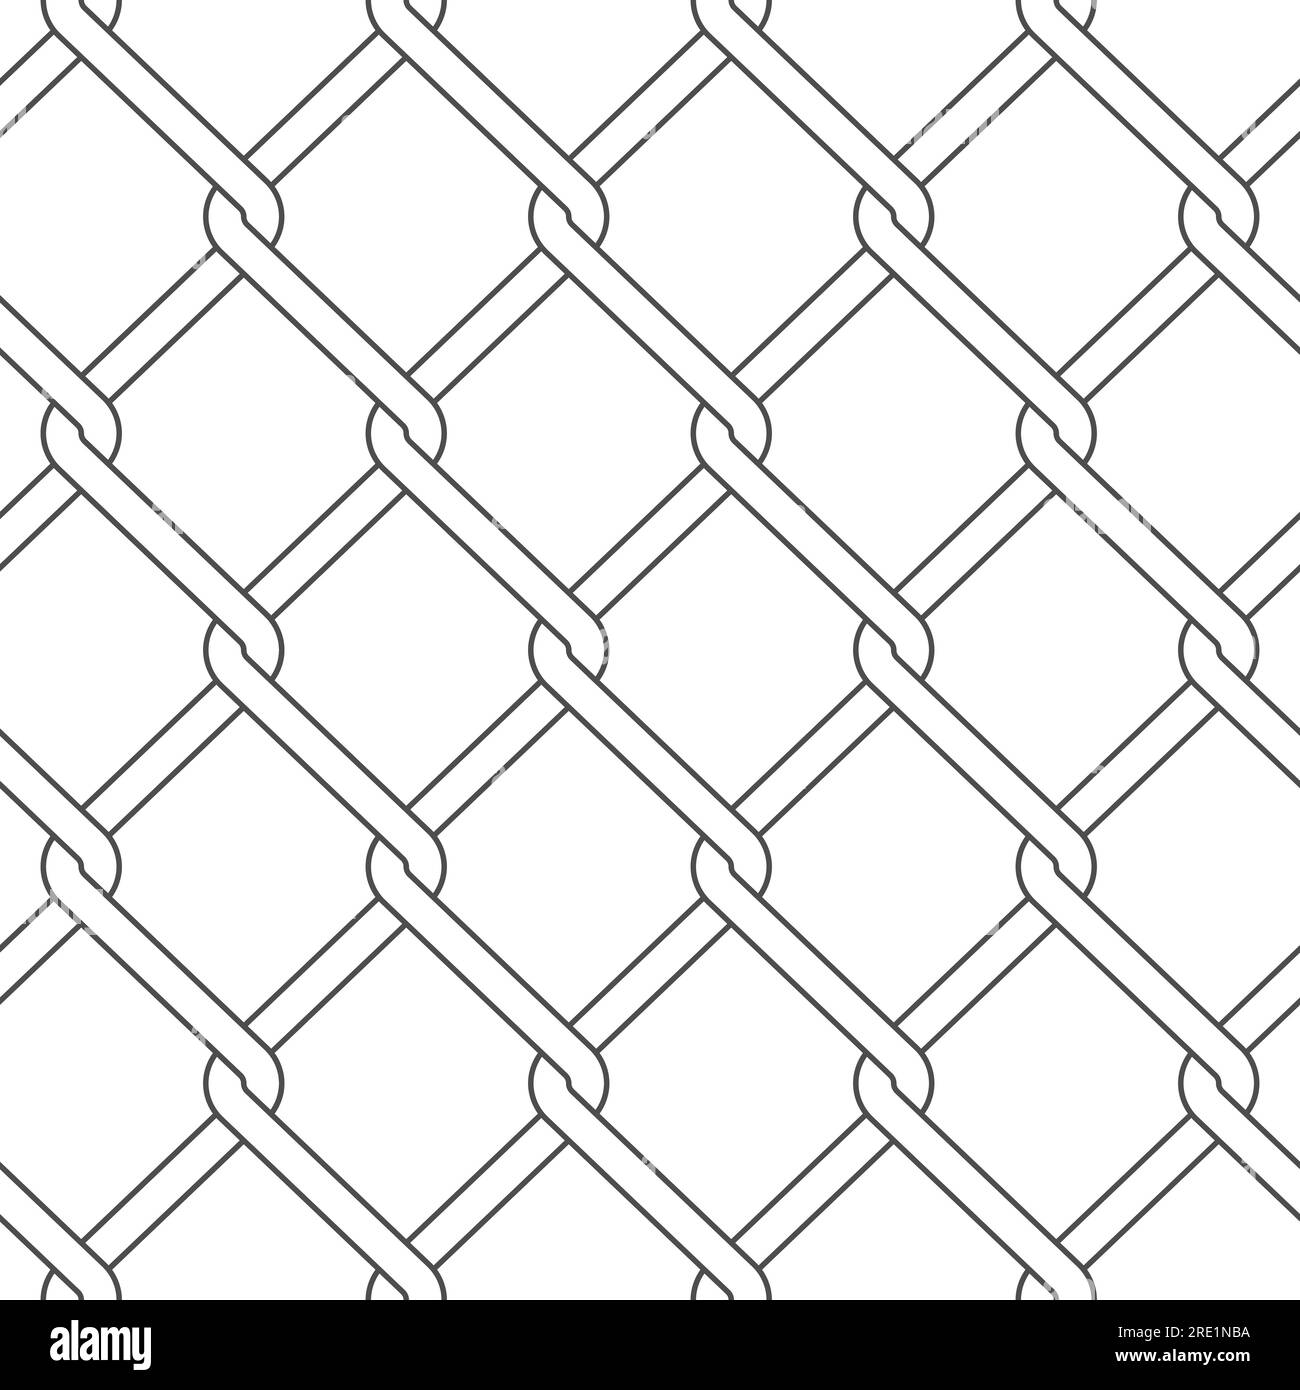 Nahtloses Muster mit Netzgewebe. Schwarzer und weißer Vektorhintergrund auf weißem Hintergrund. Stock Vektor